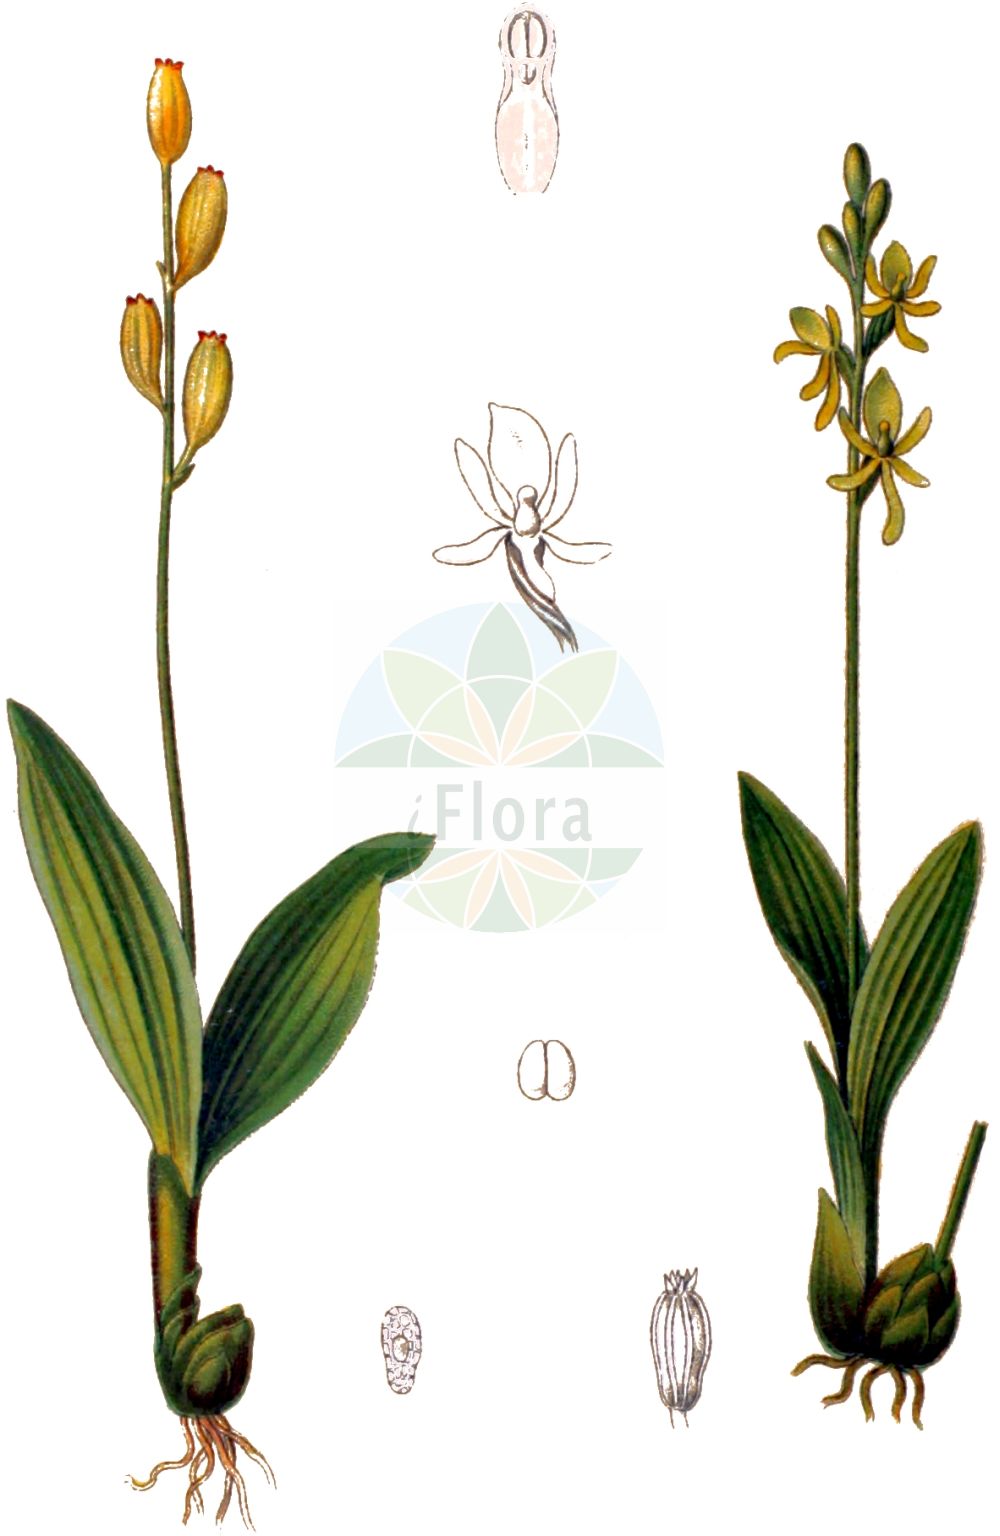 Historische Abbildung von Liparis loeselii (Sumpf-Glanzkraut - Fen Orchid). Das Bild zeigt Blatt, Bluete, Frucht und Same. ---- Historical Drawing of Liparis loeselii (Sumpf-Glanzkraut - Fen Orchid). The image is showing leaf, flower, fruit and seed.(Liparis loeselii,Sumpf-Glanzkraut,Fen Orchid,Anistylis lutea,Cymbidium loeselii,Leptorkis loeselii,Liparis bifolia,Liparis correana,Liparis loeselii,Malaxis correana,Malaxis loeselii,Malaxis longifolia,Mesoptera loeselii,Ophrys loeselii,Ophrys pulchella,Ophrys trigona,Orchis loeselii,Paliris loeselii,Pseudorchis loeselii,Serapias loeselii,Sturmia loeselii,Sumpf-Glanzkraut,Glanzstaendel,Fen Orchid,Yellow Widelip Orchid,Liparis,Glanzorchis,Widelip Orchid,Orchidaceae,Knabenkrautgewächse,Orchid family,Blatt,Bluete,Frucht,Same,leaf,flower,fruit,seed,Schulze (1892-1894))